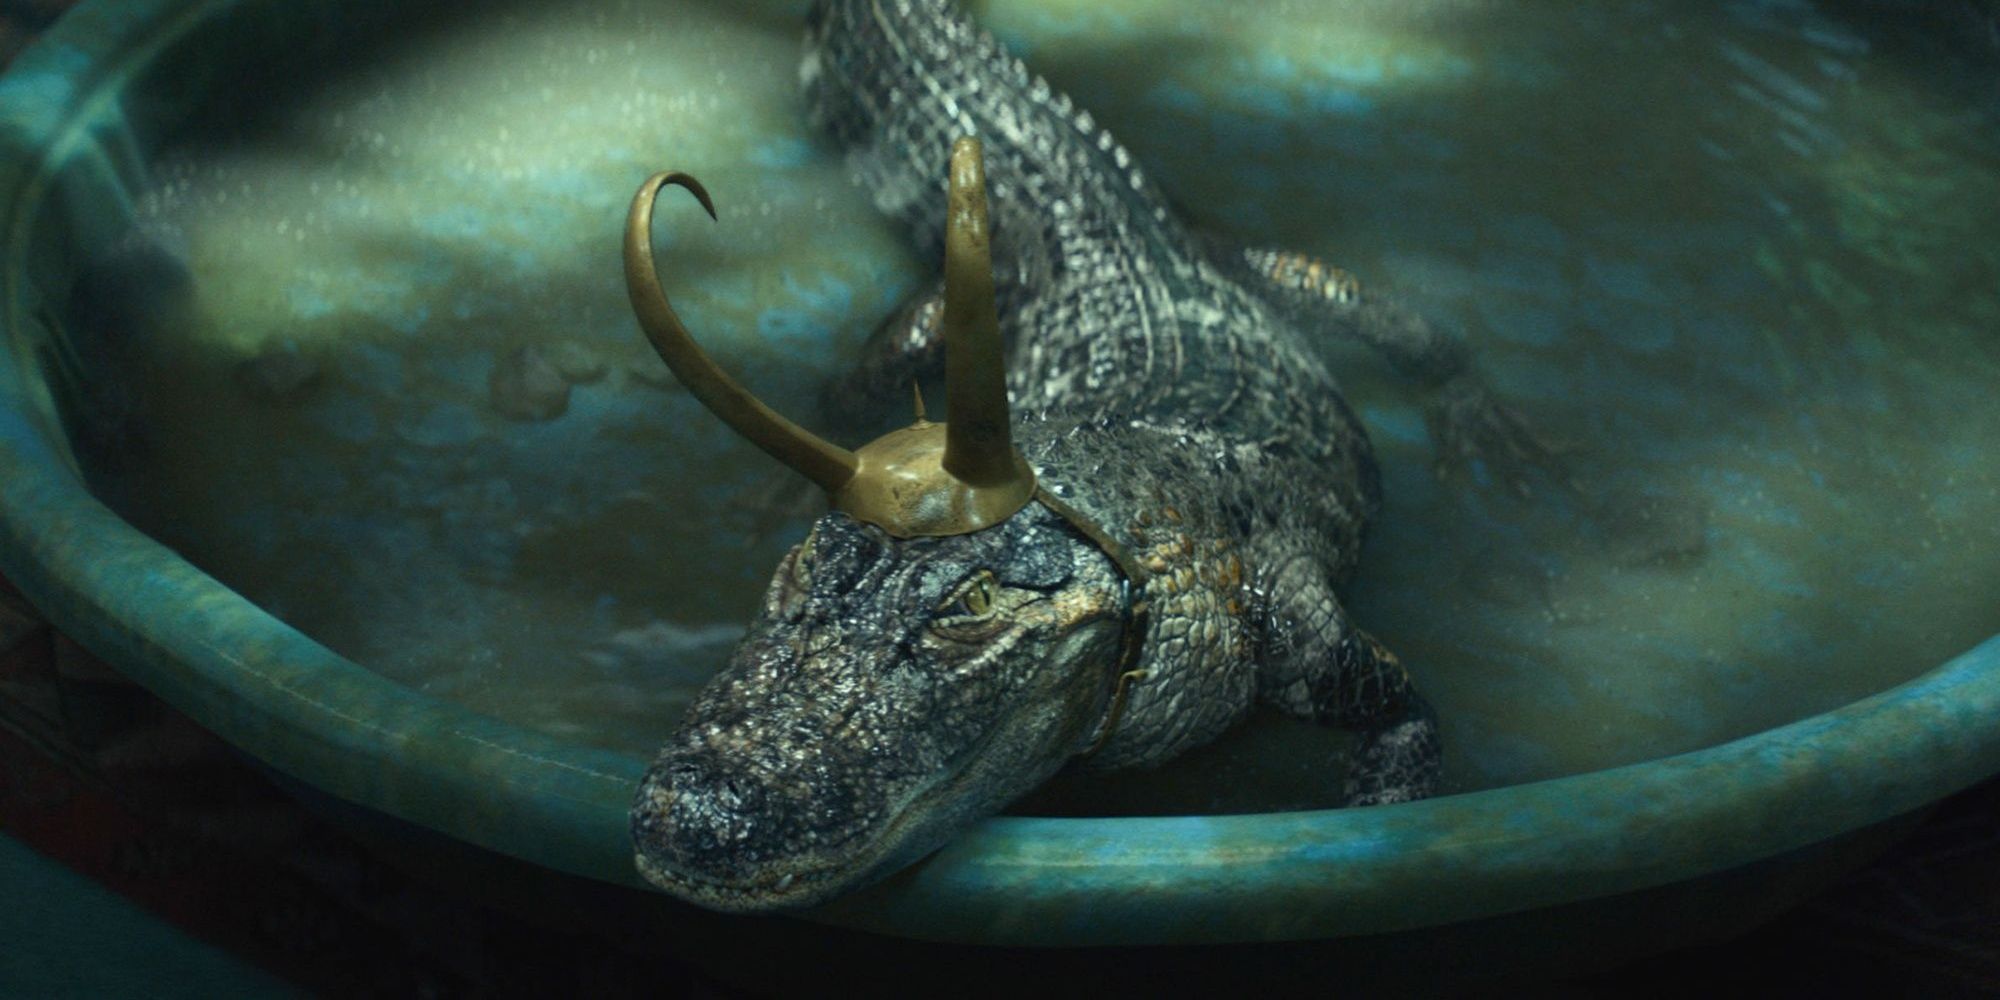 Gator Loki lounging in his pool 